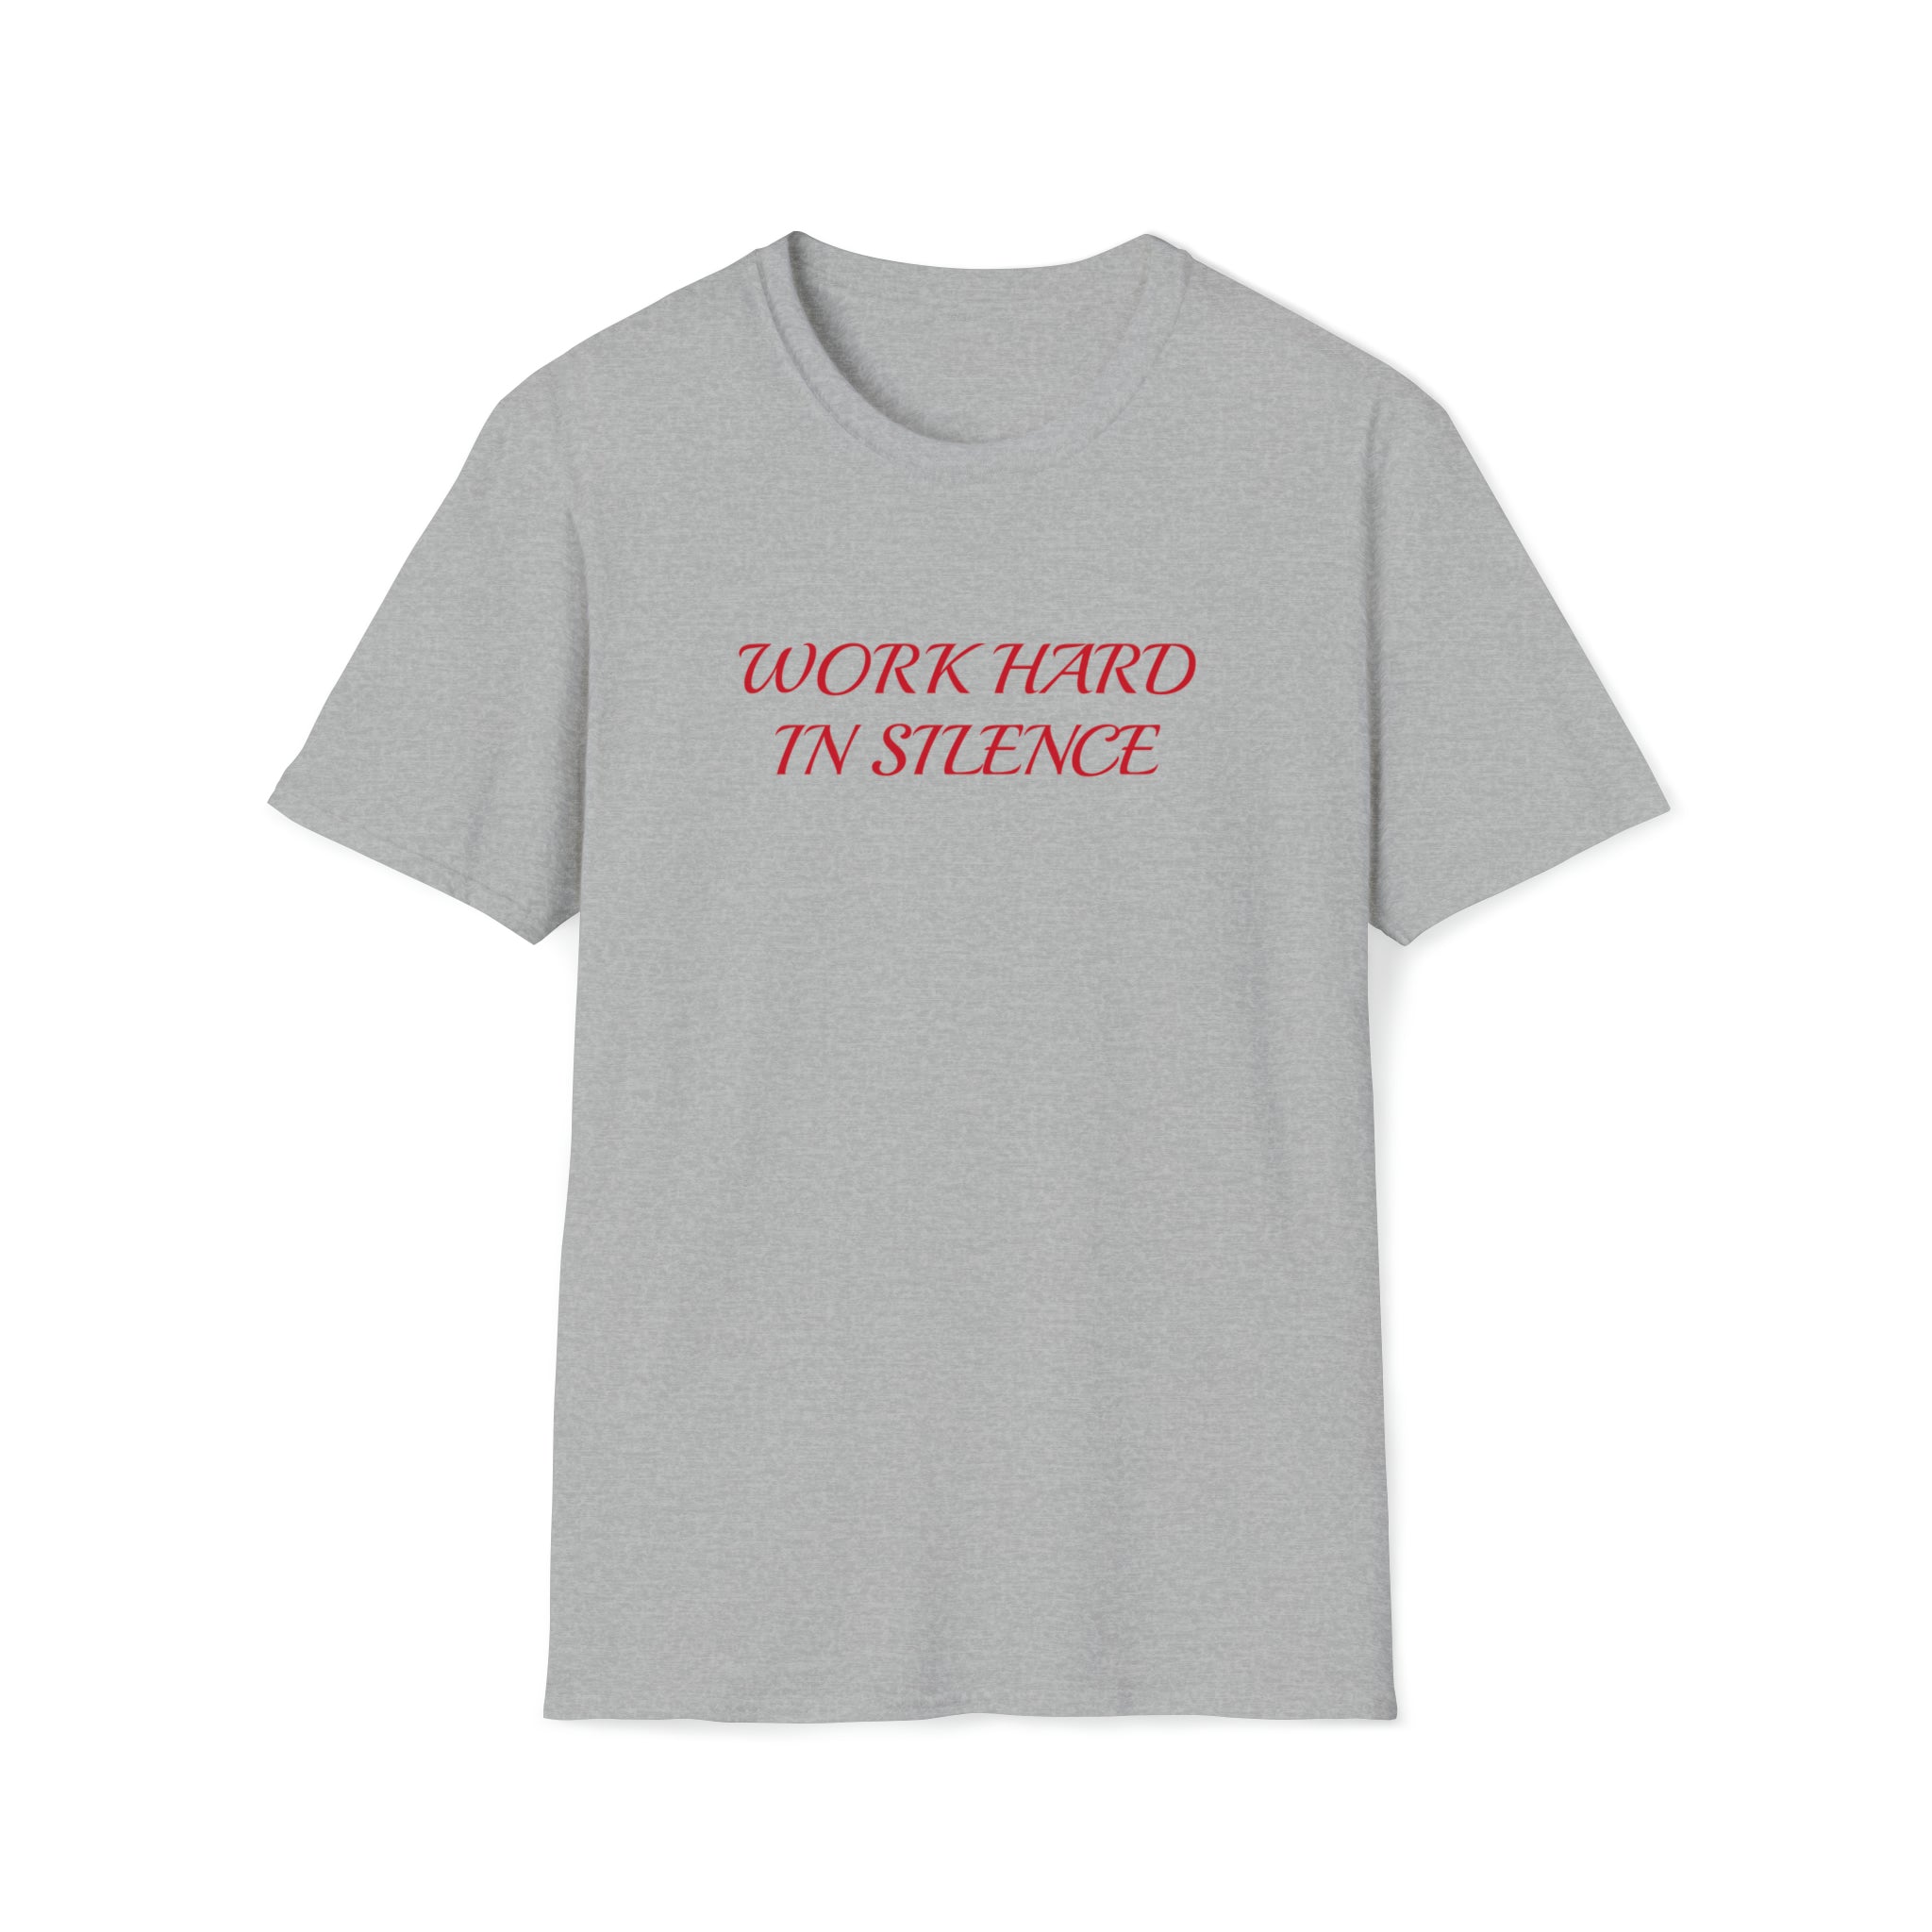 Work hard in silence T-Shirt